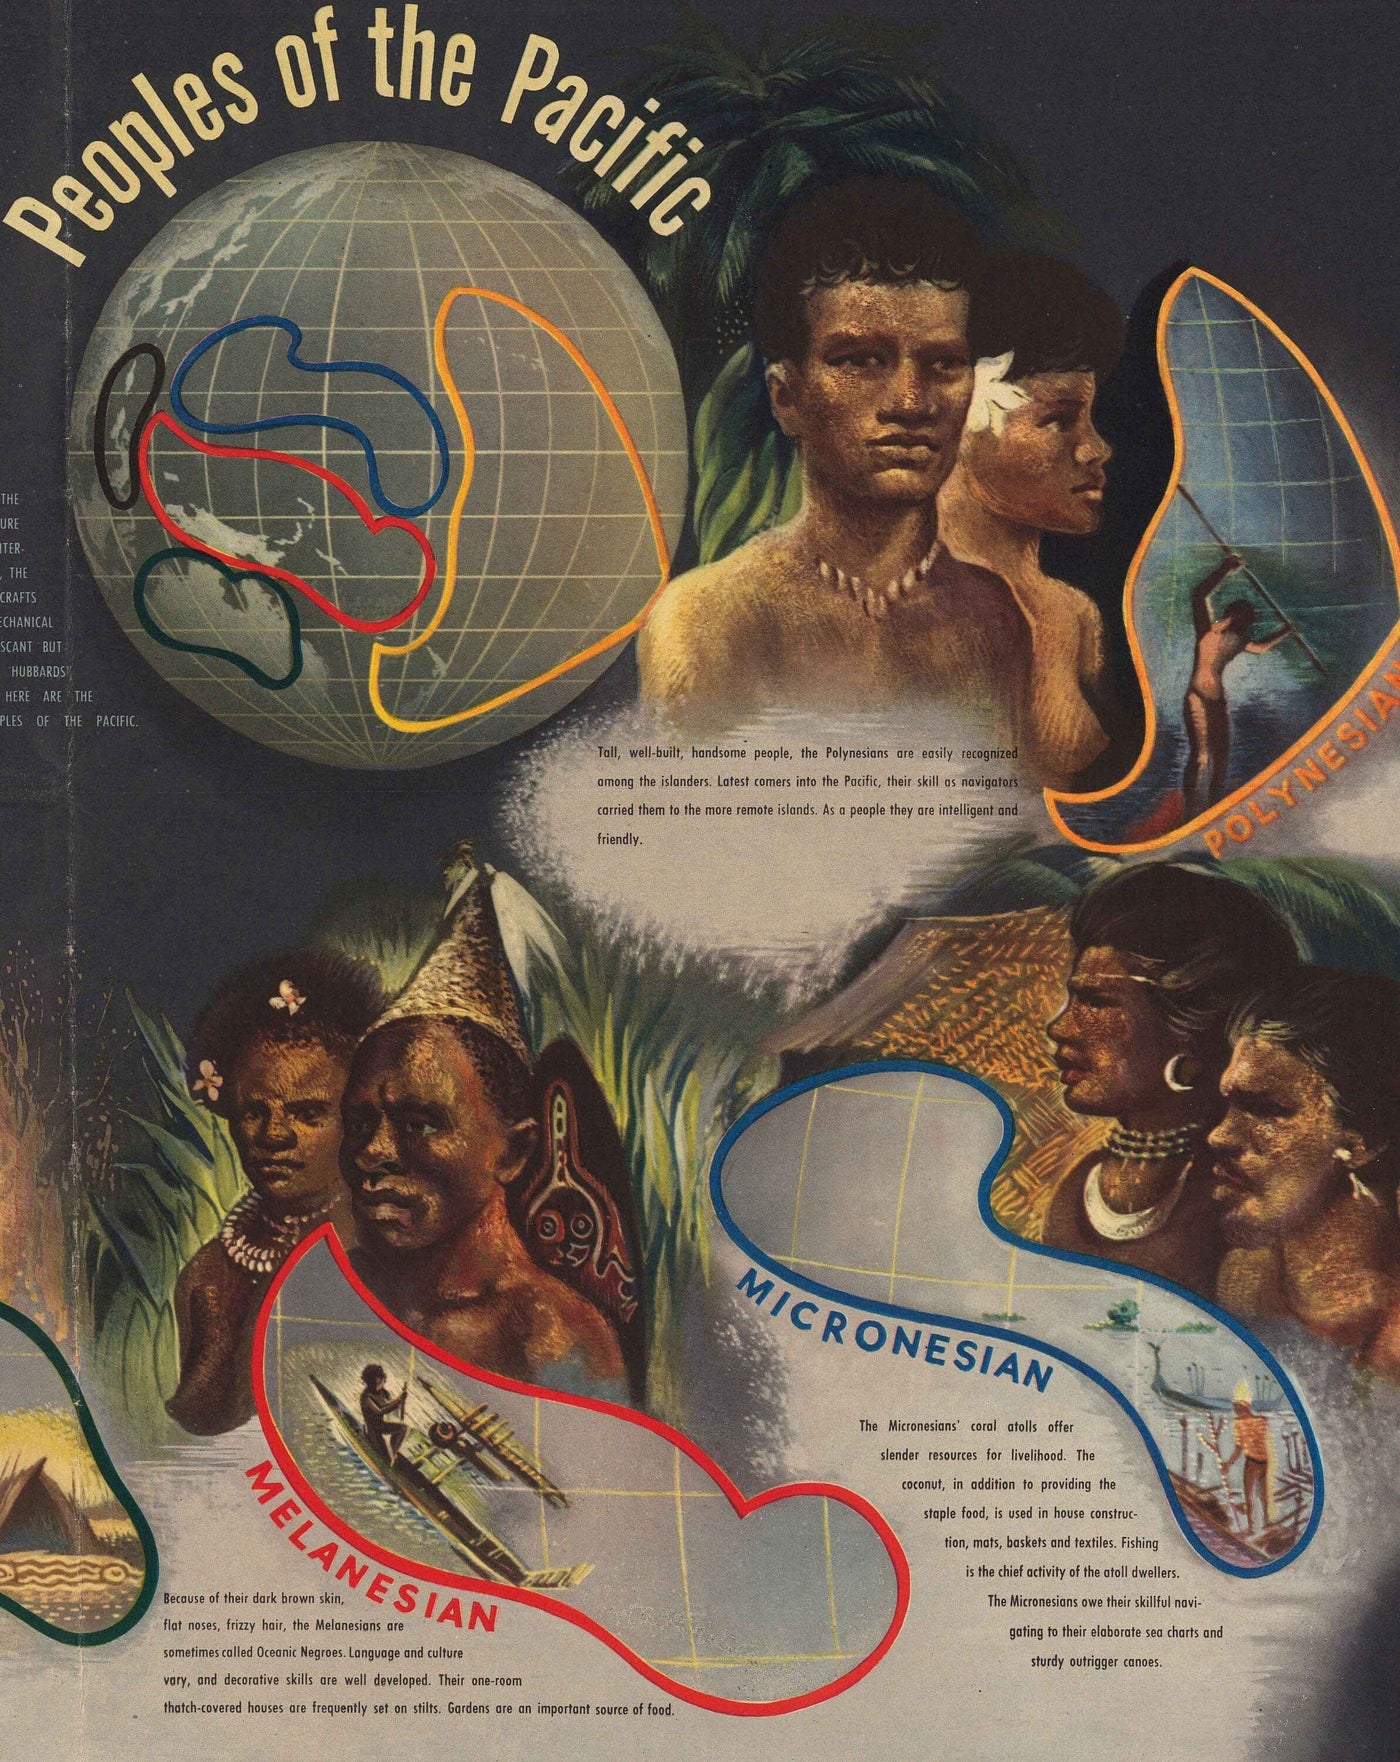 MAPOLE DE LA Guerre mondiale de l'ancienne: Pacifique Sud-Ouest, 1944 - Navwarmap n ° 5 - Australie, Nouvelle-Guinée, Indonésie Philippines, îles